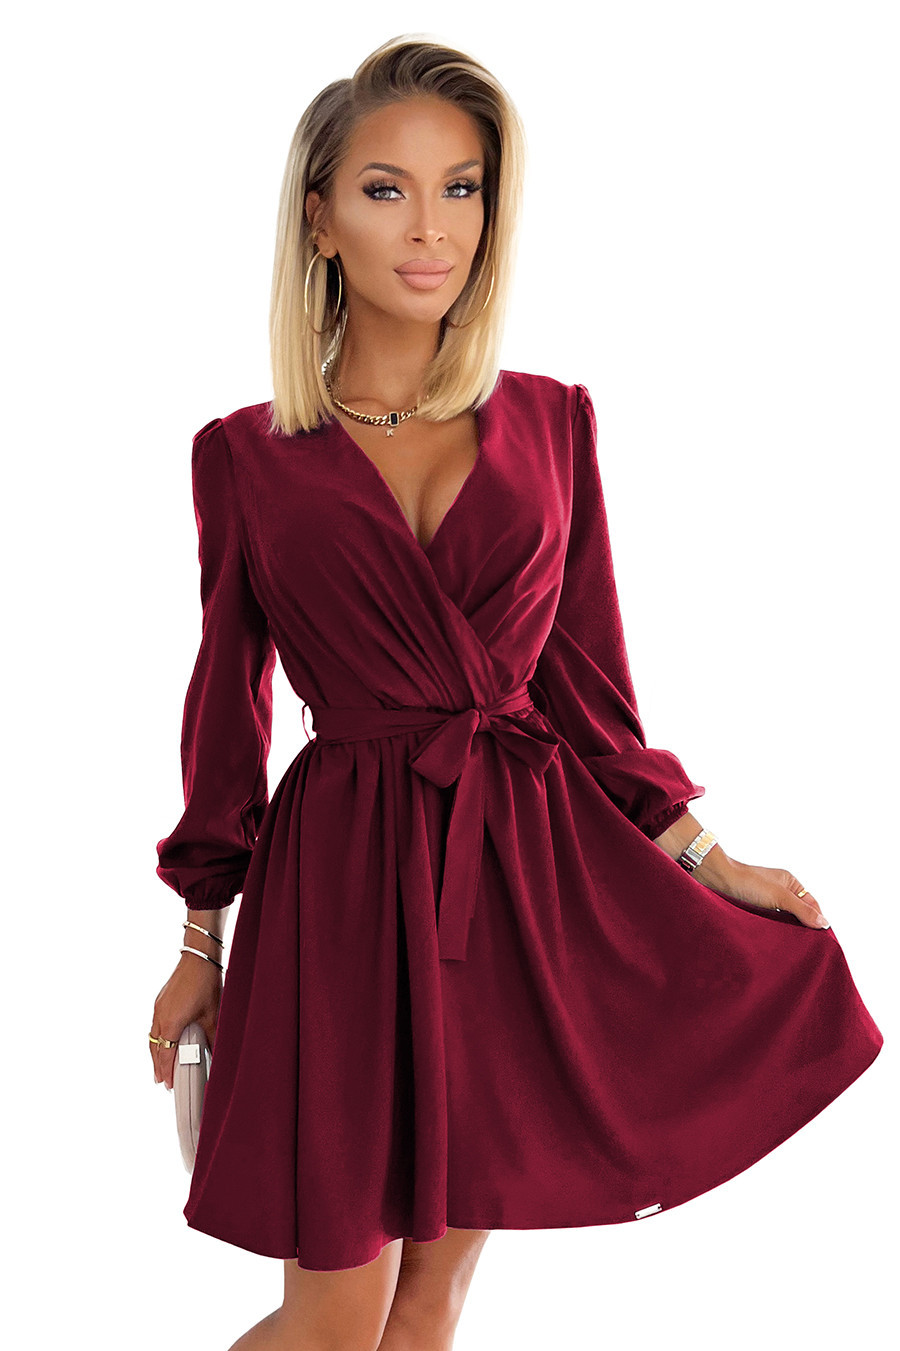 BINDY - Velmi žensky působící dámské šaty ve vínové bordó barvě s dekoltem 339-3 S/M